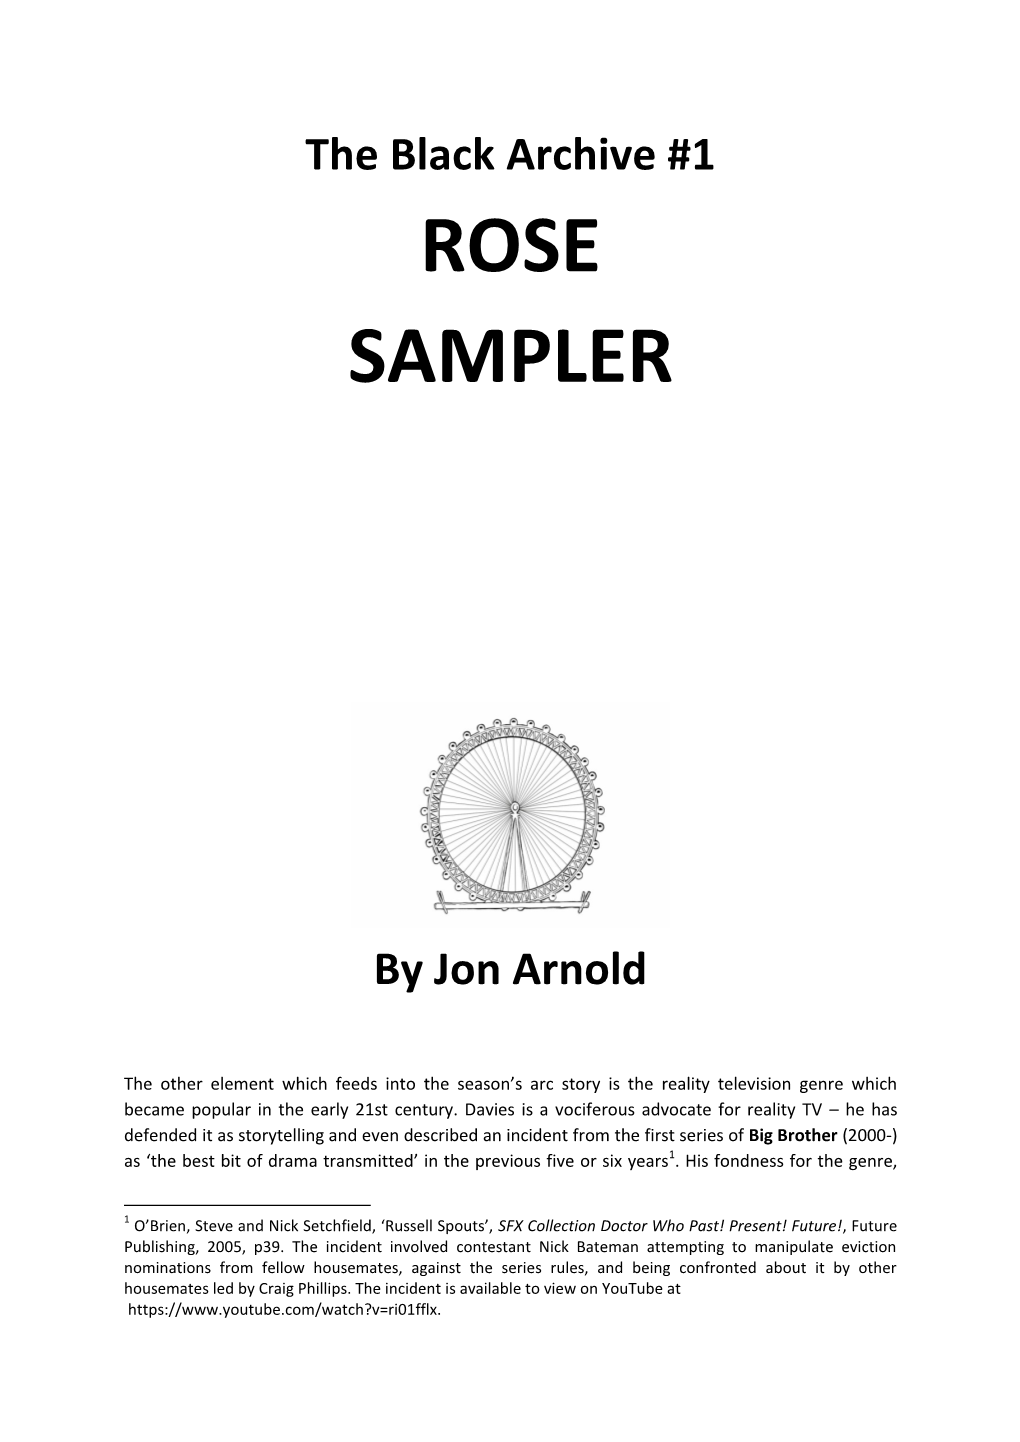 Rose Sampler